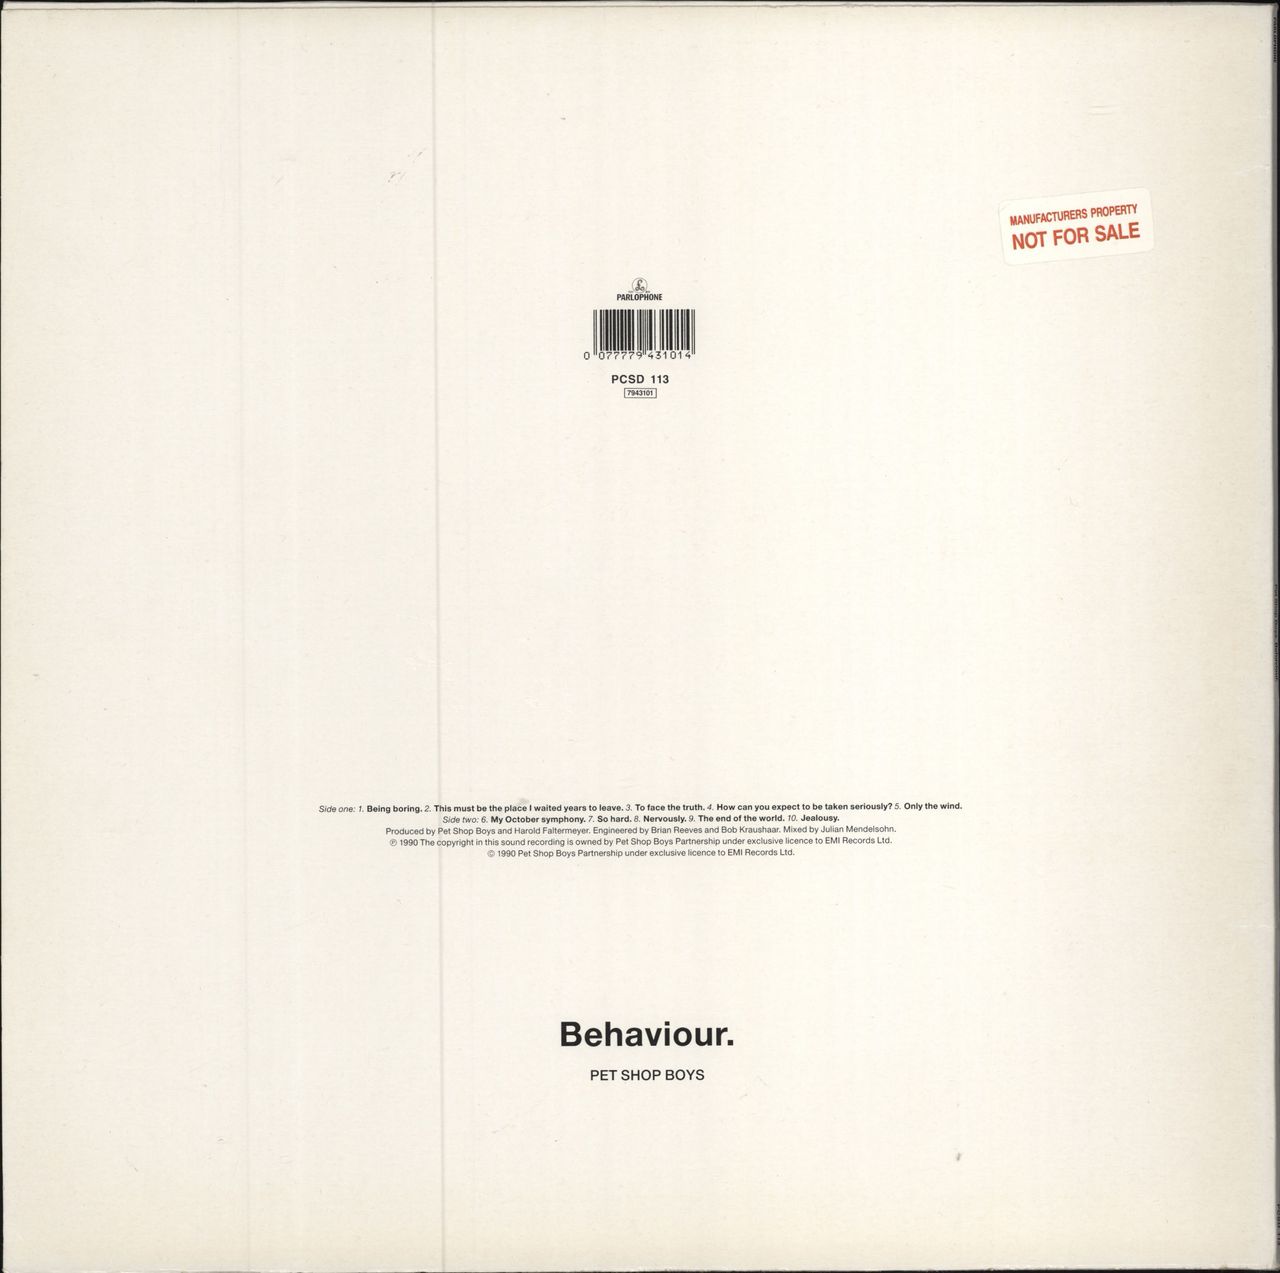 Pet Shop Boys Behaviour - Manufacturers sticker UK vinyl LP album (LP record) 077779431014